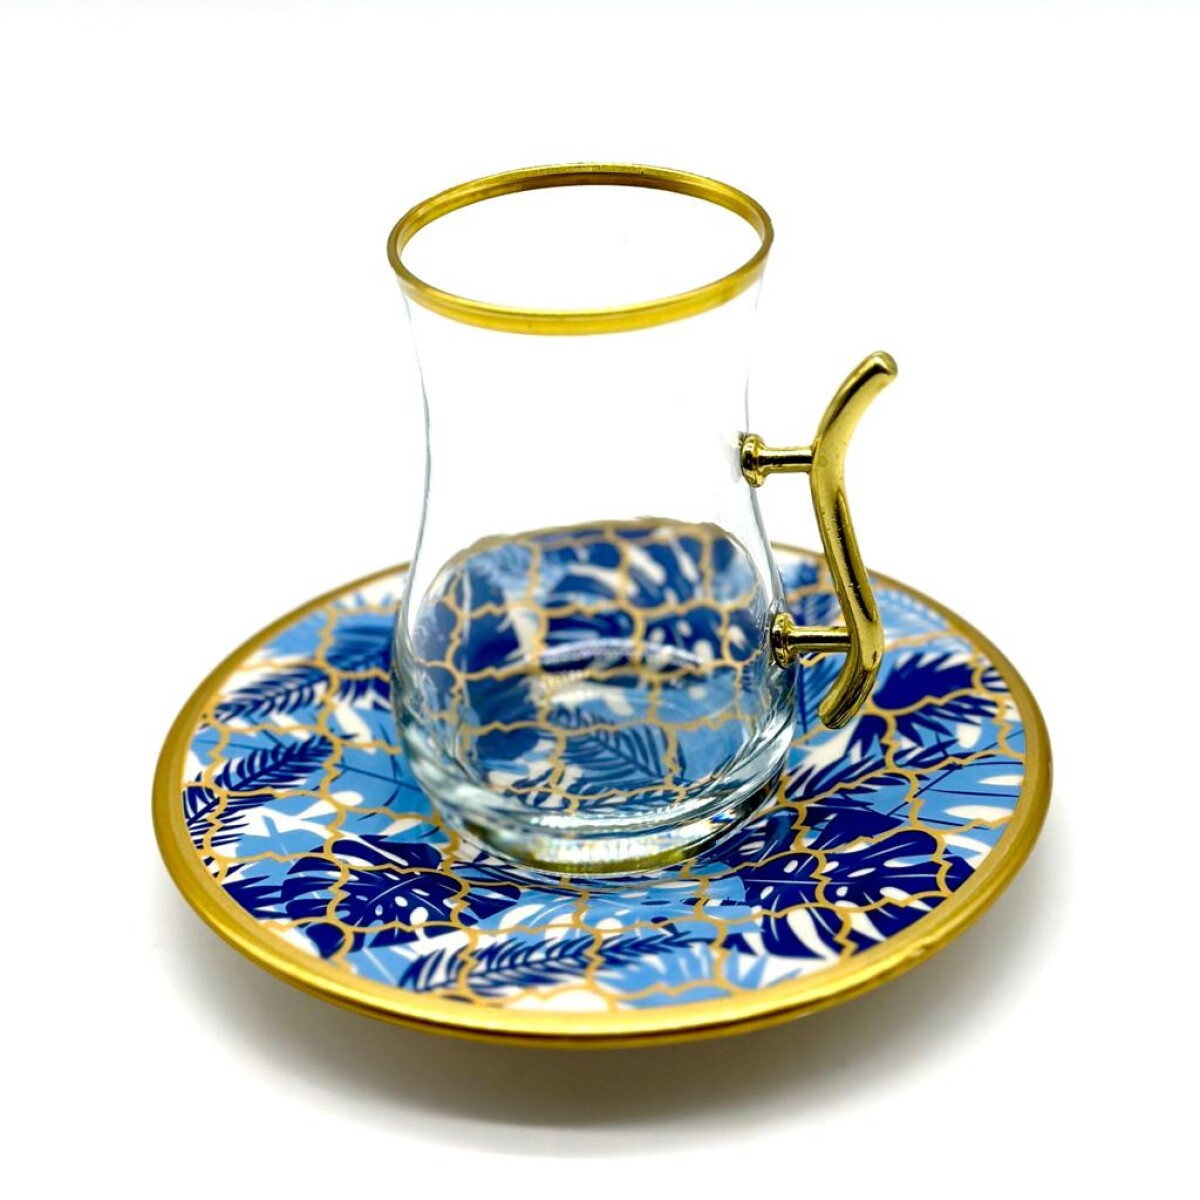 Vaso de té vip plato de cerámica x1 - Turquesa 